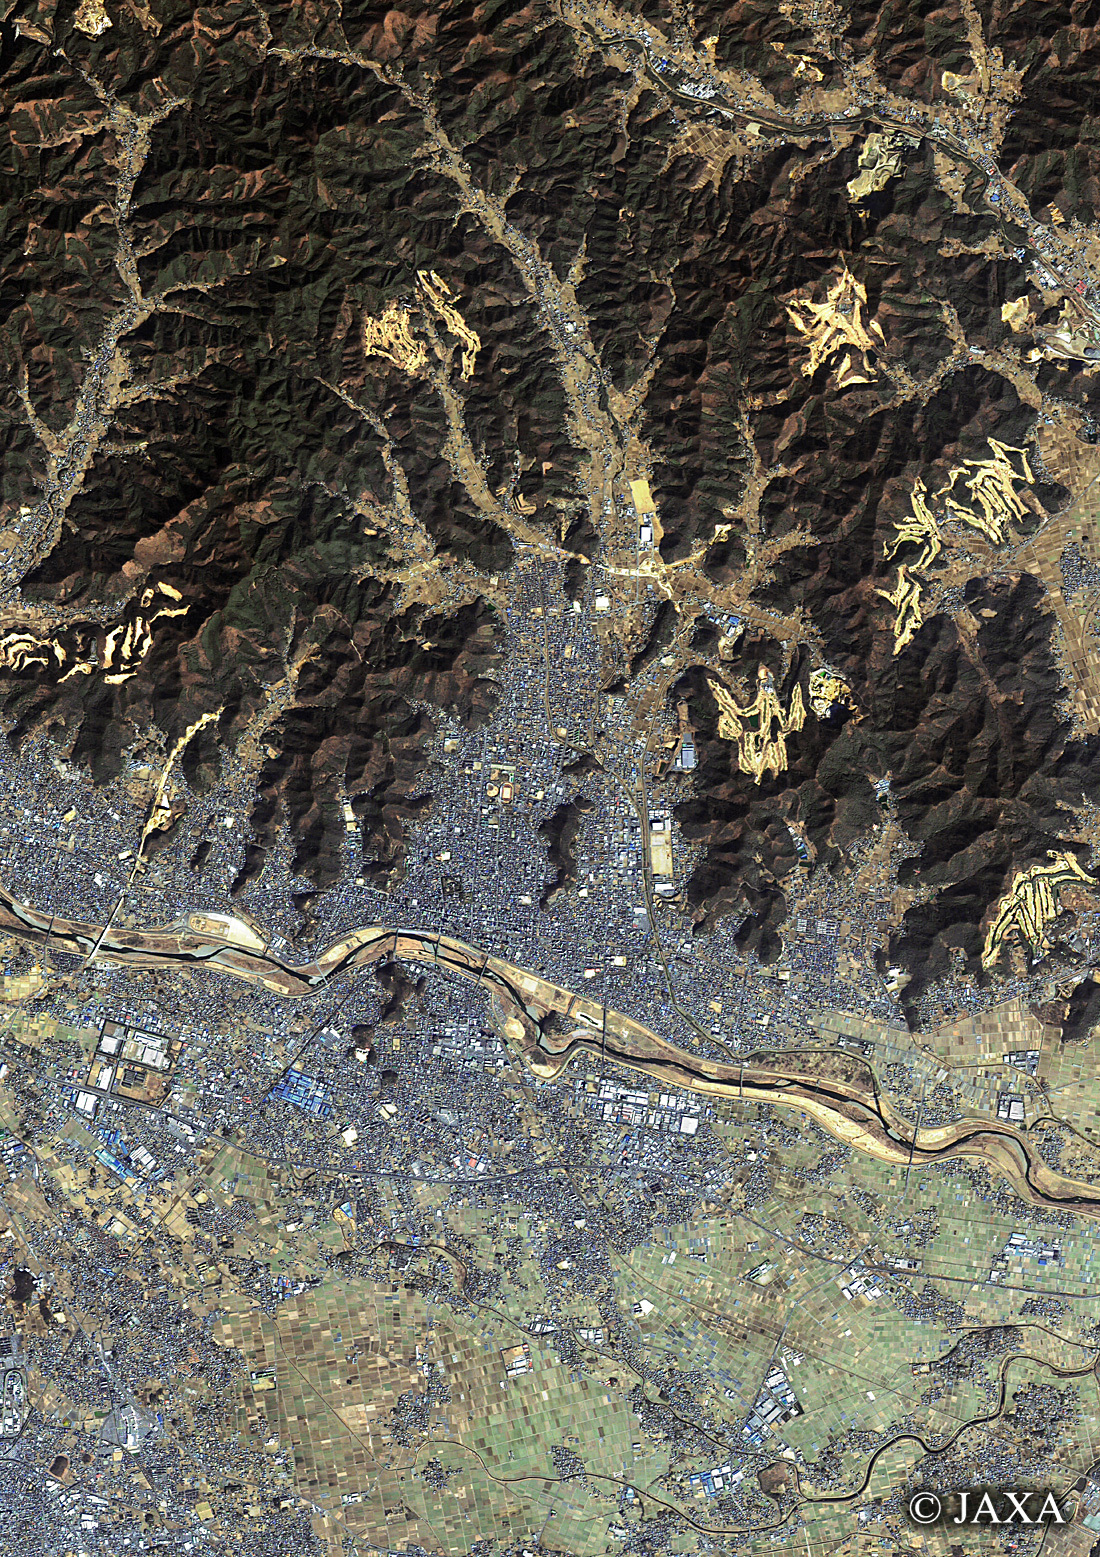 だいちから見た日本の都市 足利市周辺:衛星画像